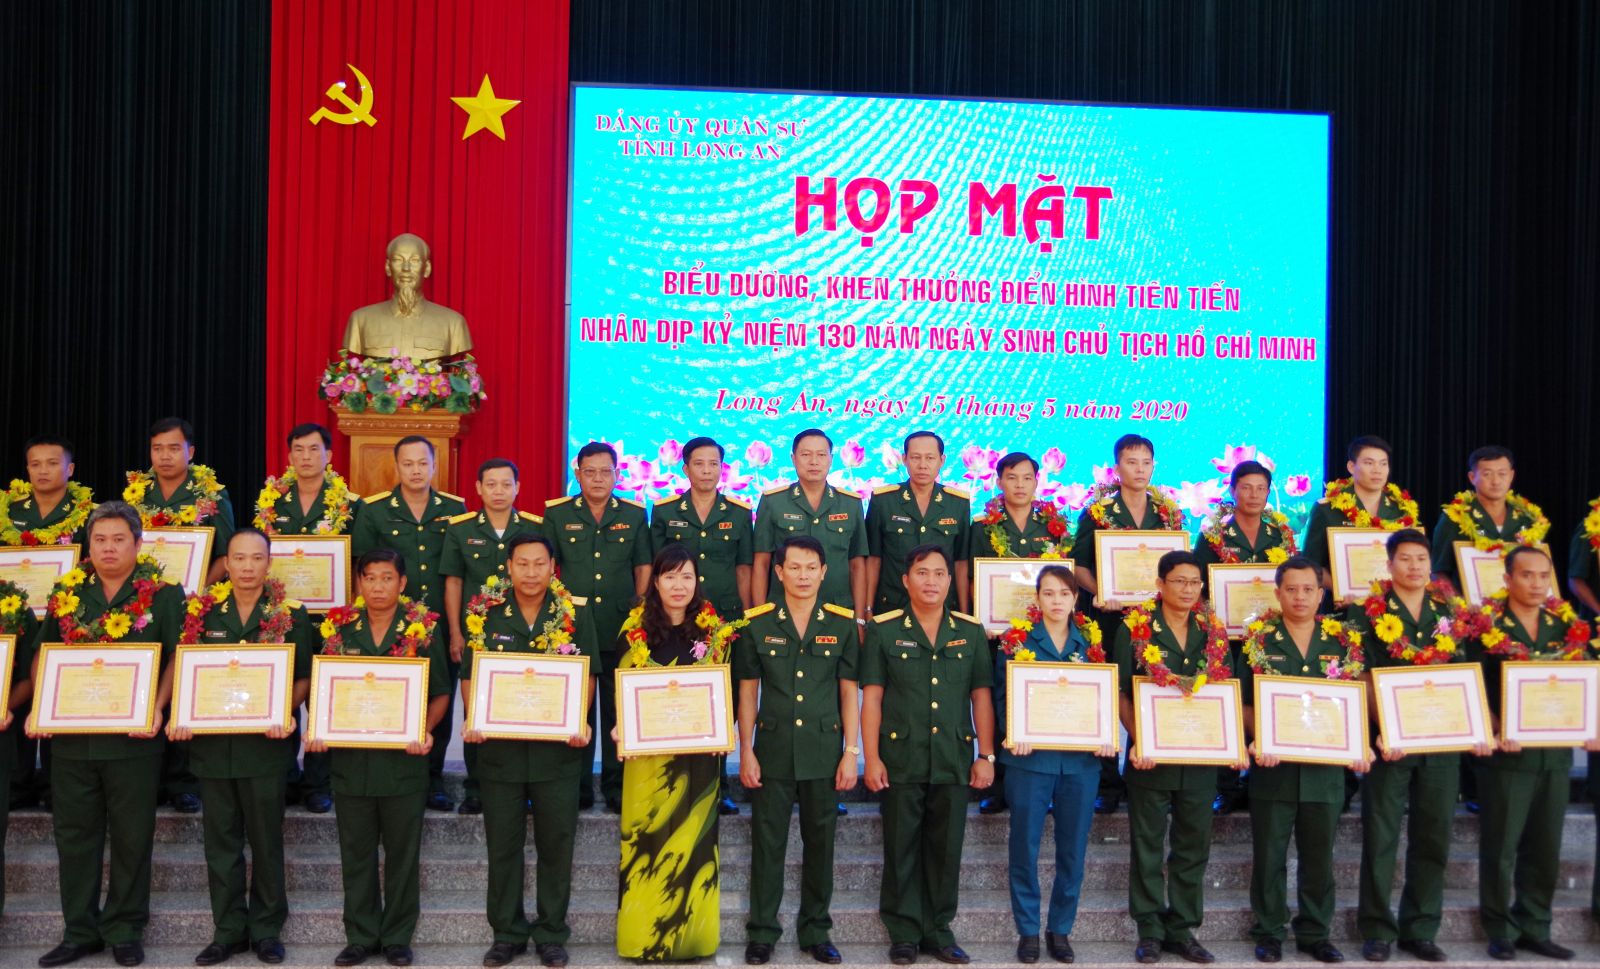 Bộ Chỉ huy Quân sự tỉnh tuyên dương những cá nhân điển hình trong Học tập và làm theo tư tưởng, đạo đức, phong cách Hồ Chí Minh Ảnh: Thùy Trang